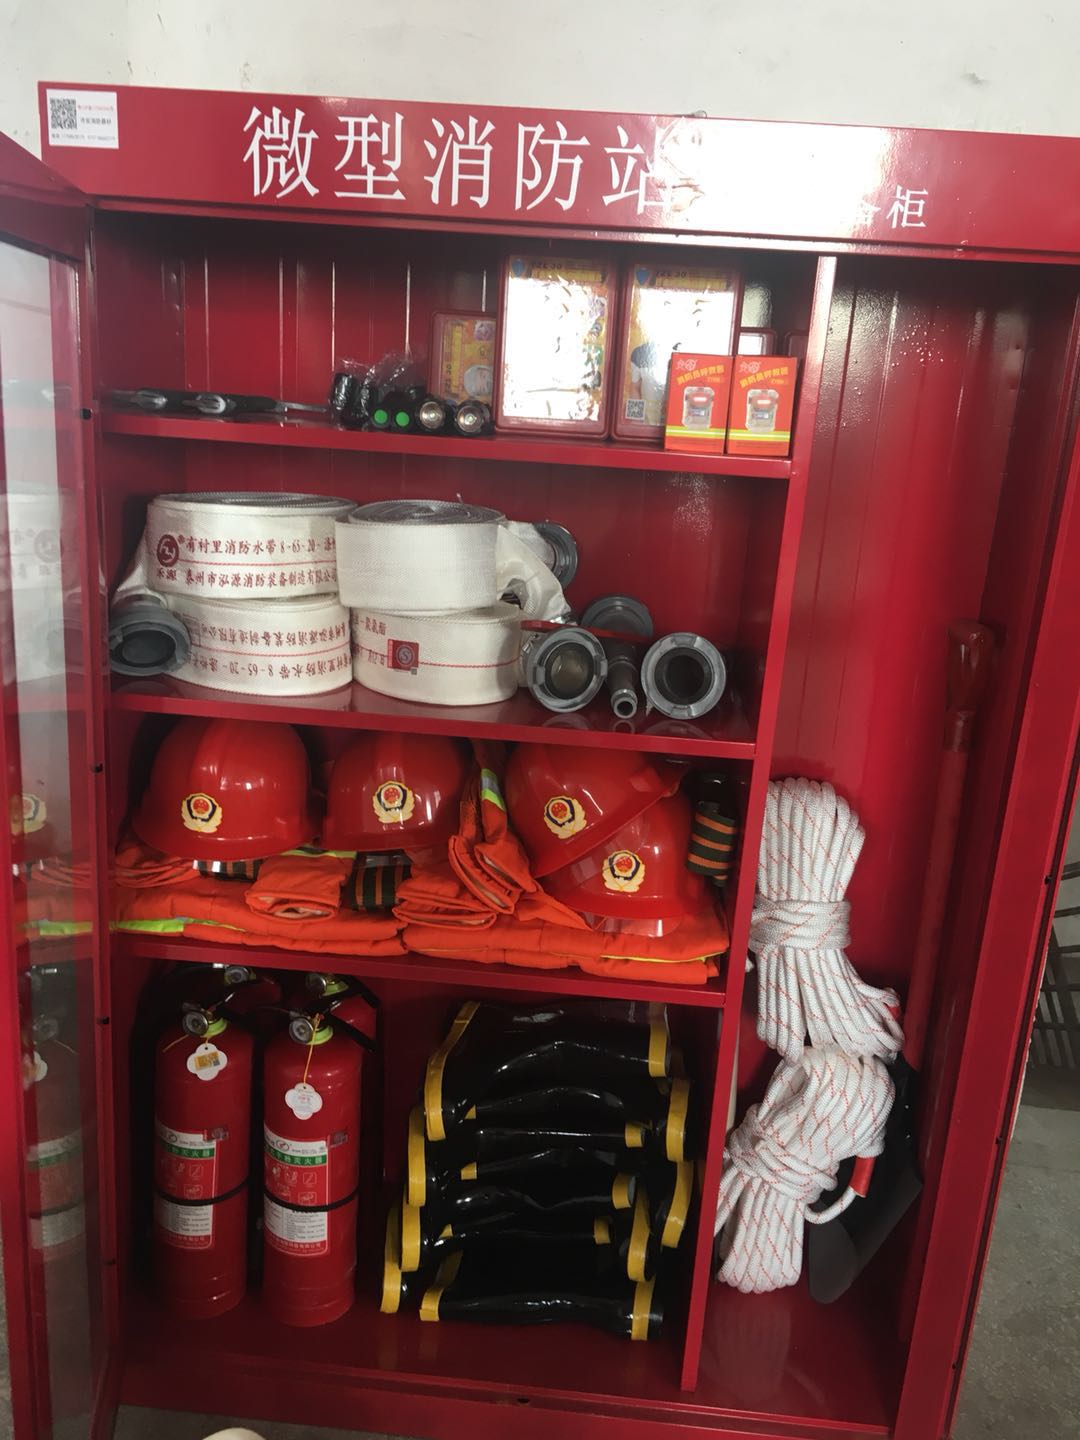 佛山市顺德区龙江乐从勒流工厂企业微型消防站配备哪些消防器材 工厂微型消防站图片